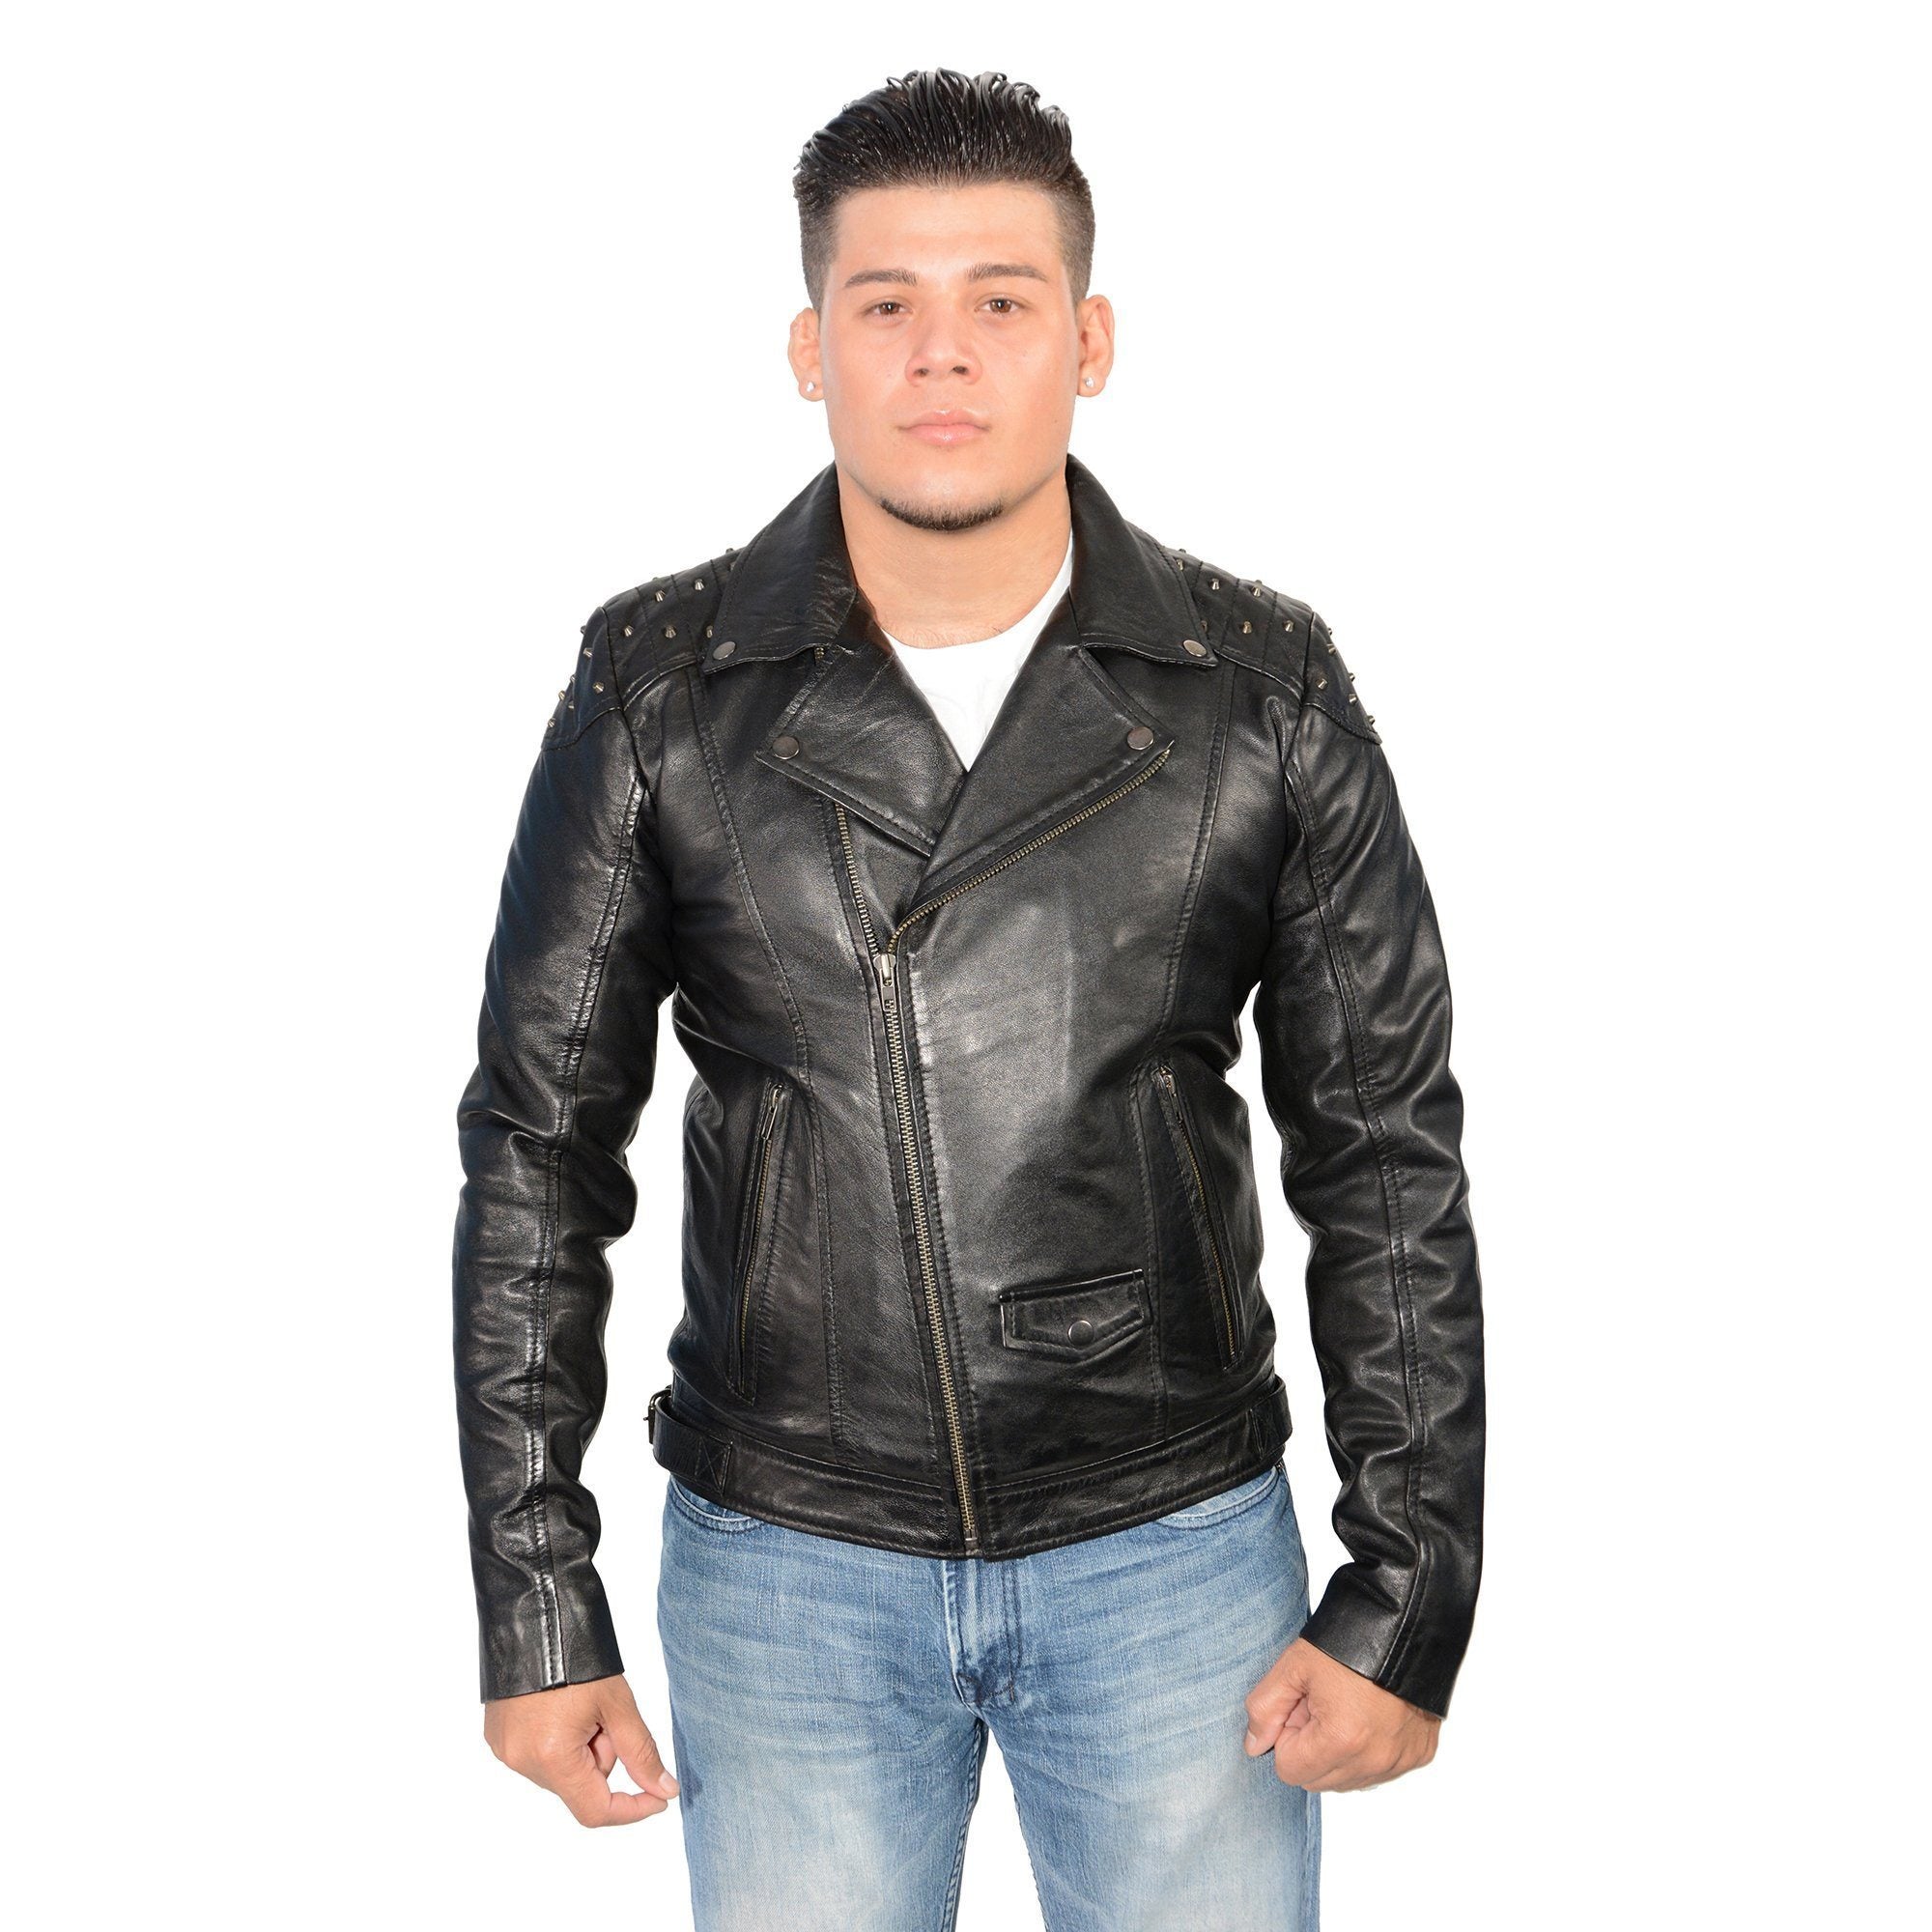 Milwaukee Leather SFM1825 Men's 'Studded' Black Leather Motorcycle Style Jacket